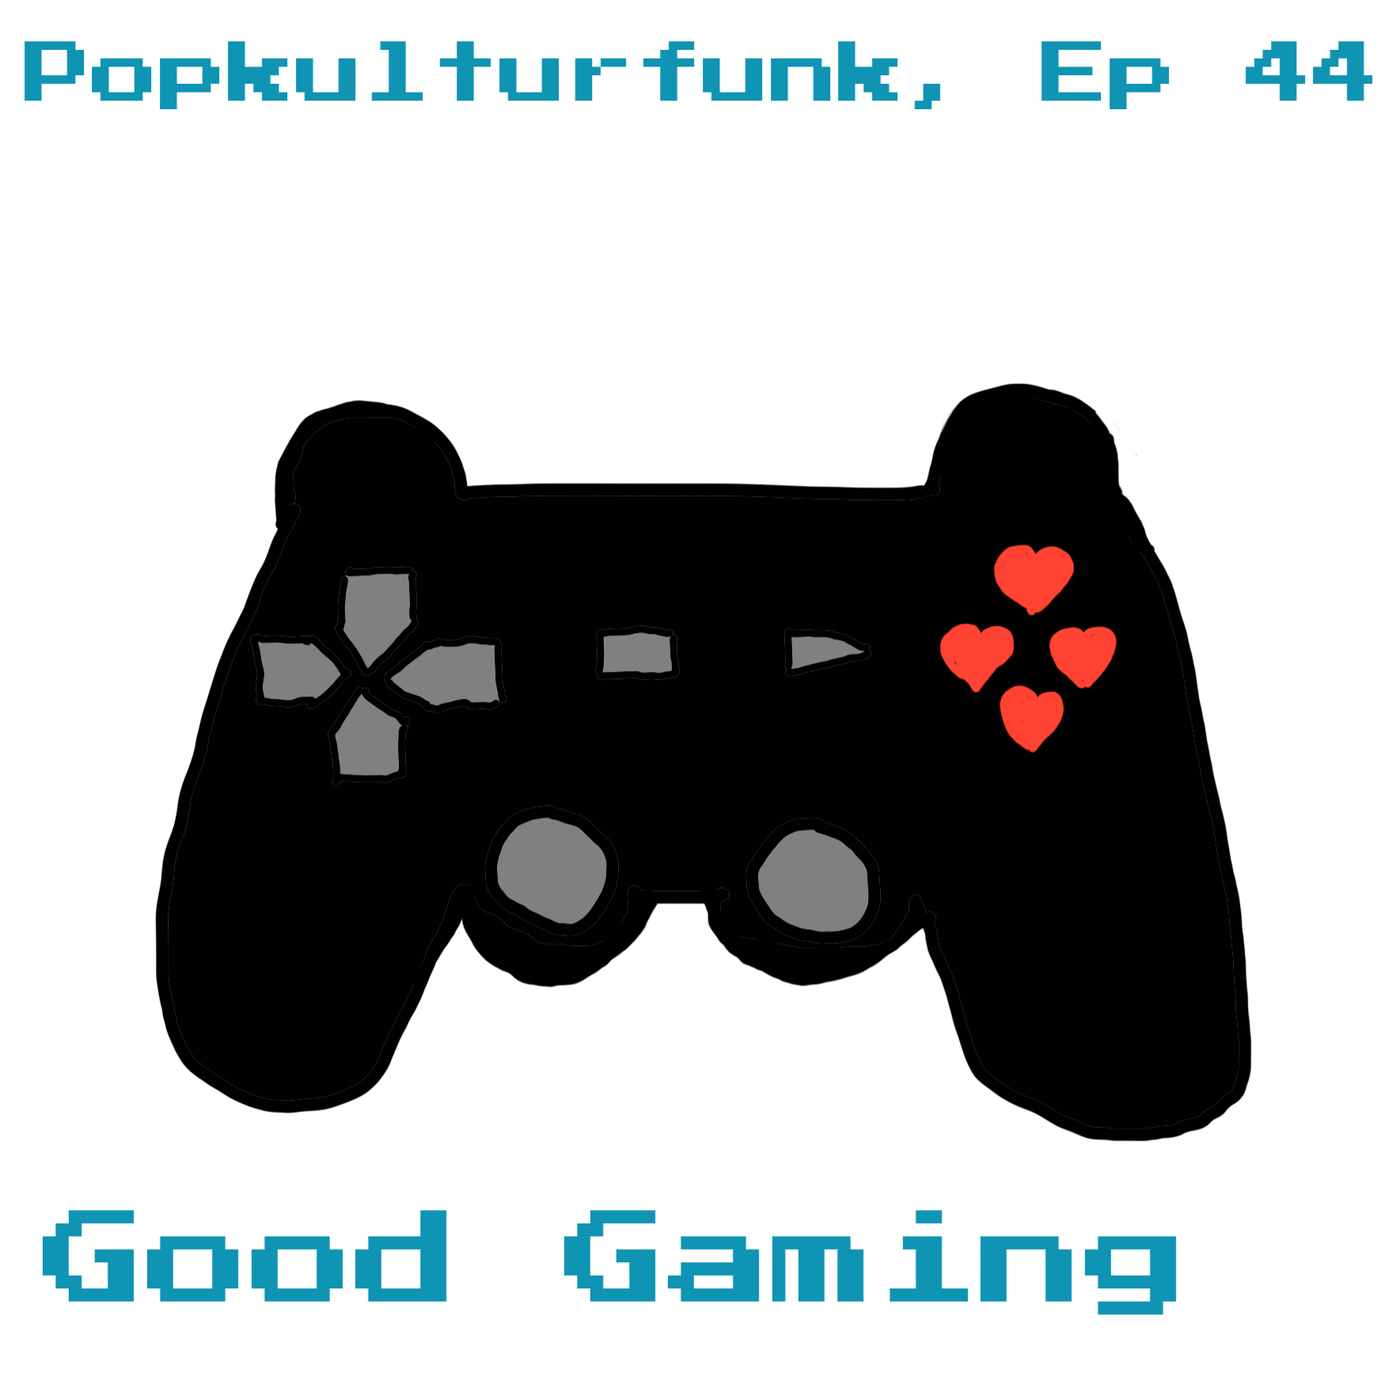 Episode 44: Good Gaming